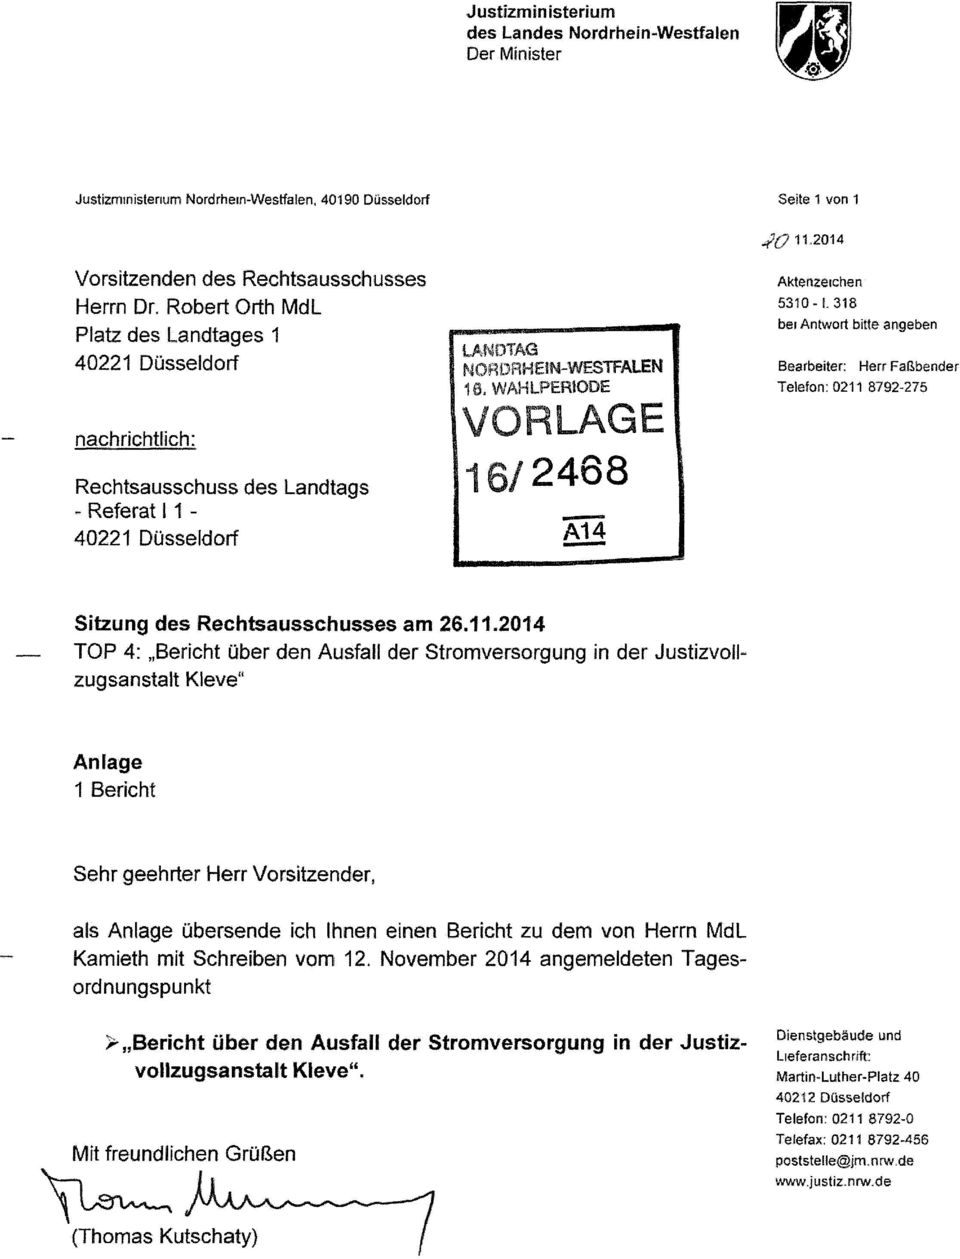 Landtags - Referat I 1-40221 Düsseldorf 1 /2468 - A14 - Sitzung des Rechtsausschusses am 26.11.